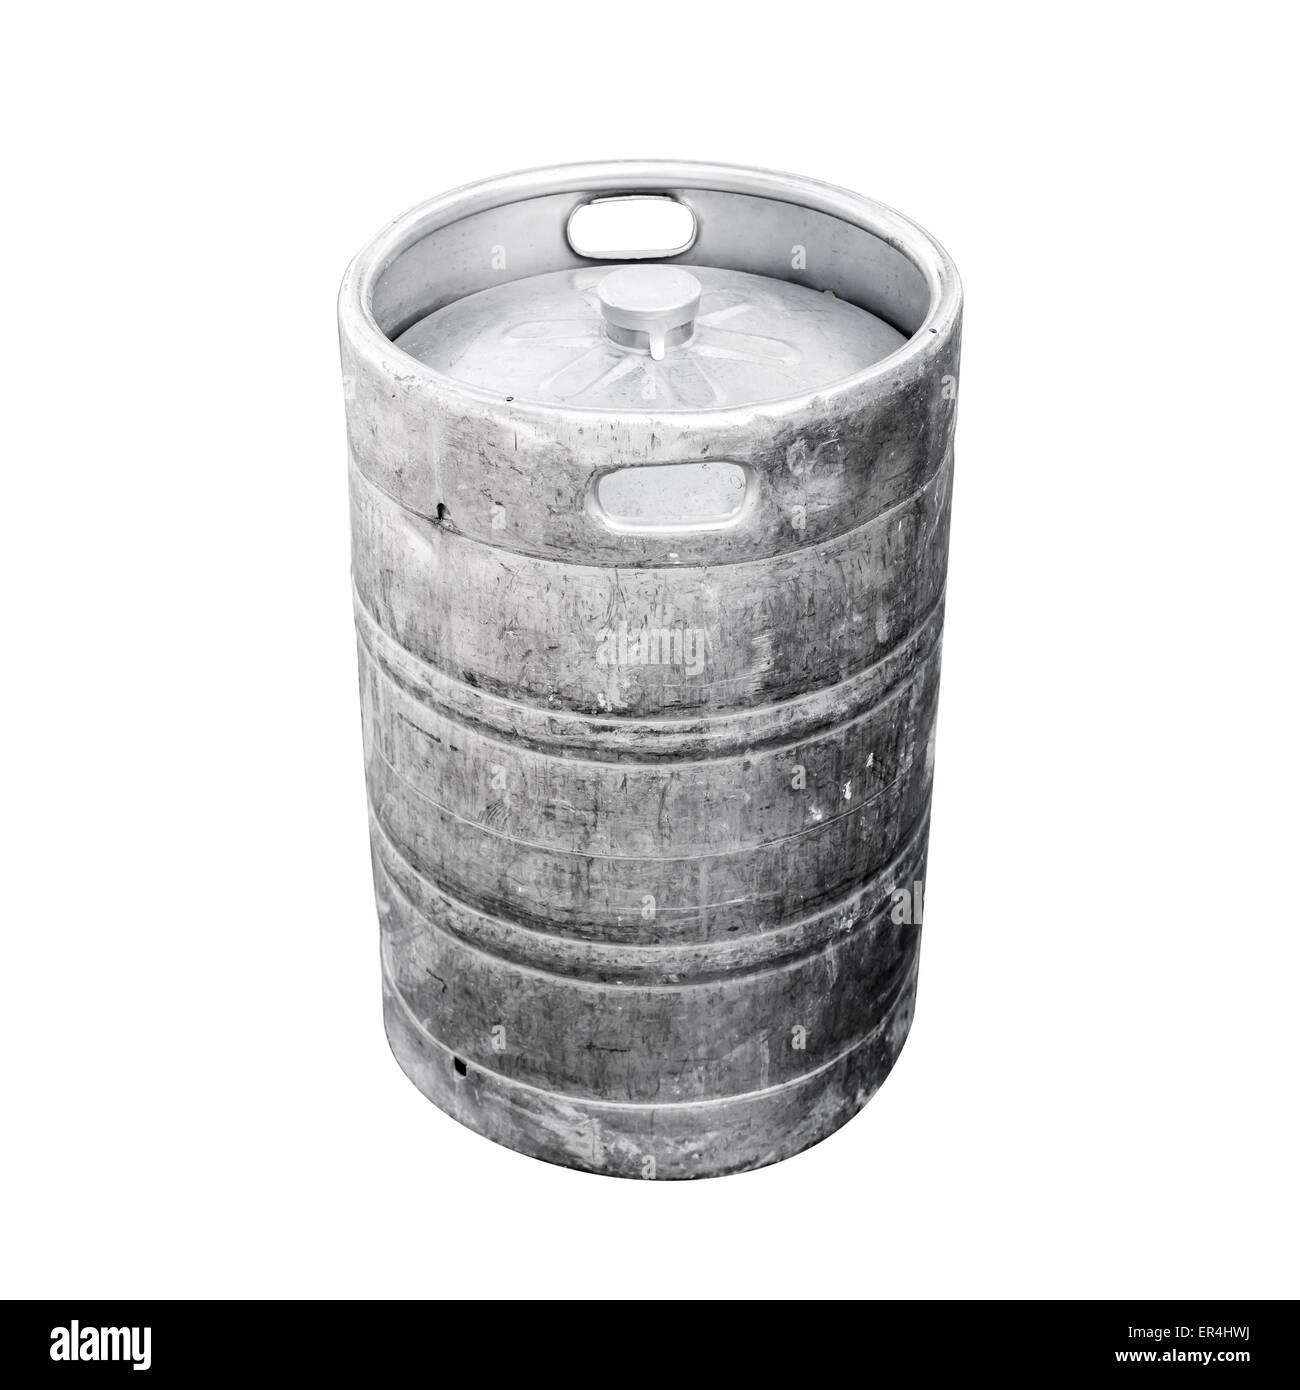 Utiliza el aluminio keg, un pequeño barril usado comúnmente para almacenar, transportar y servir la cerveza. Foto en primer plano aislado en blanco Foto de stock